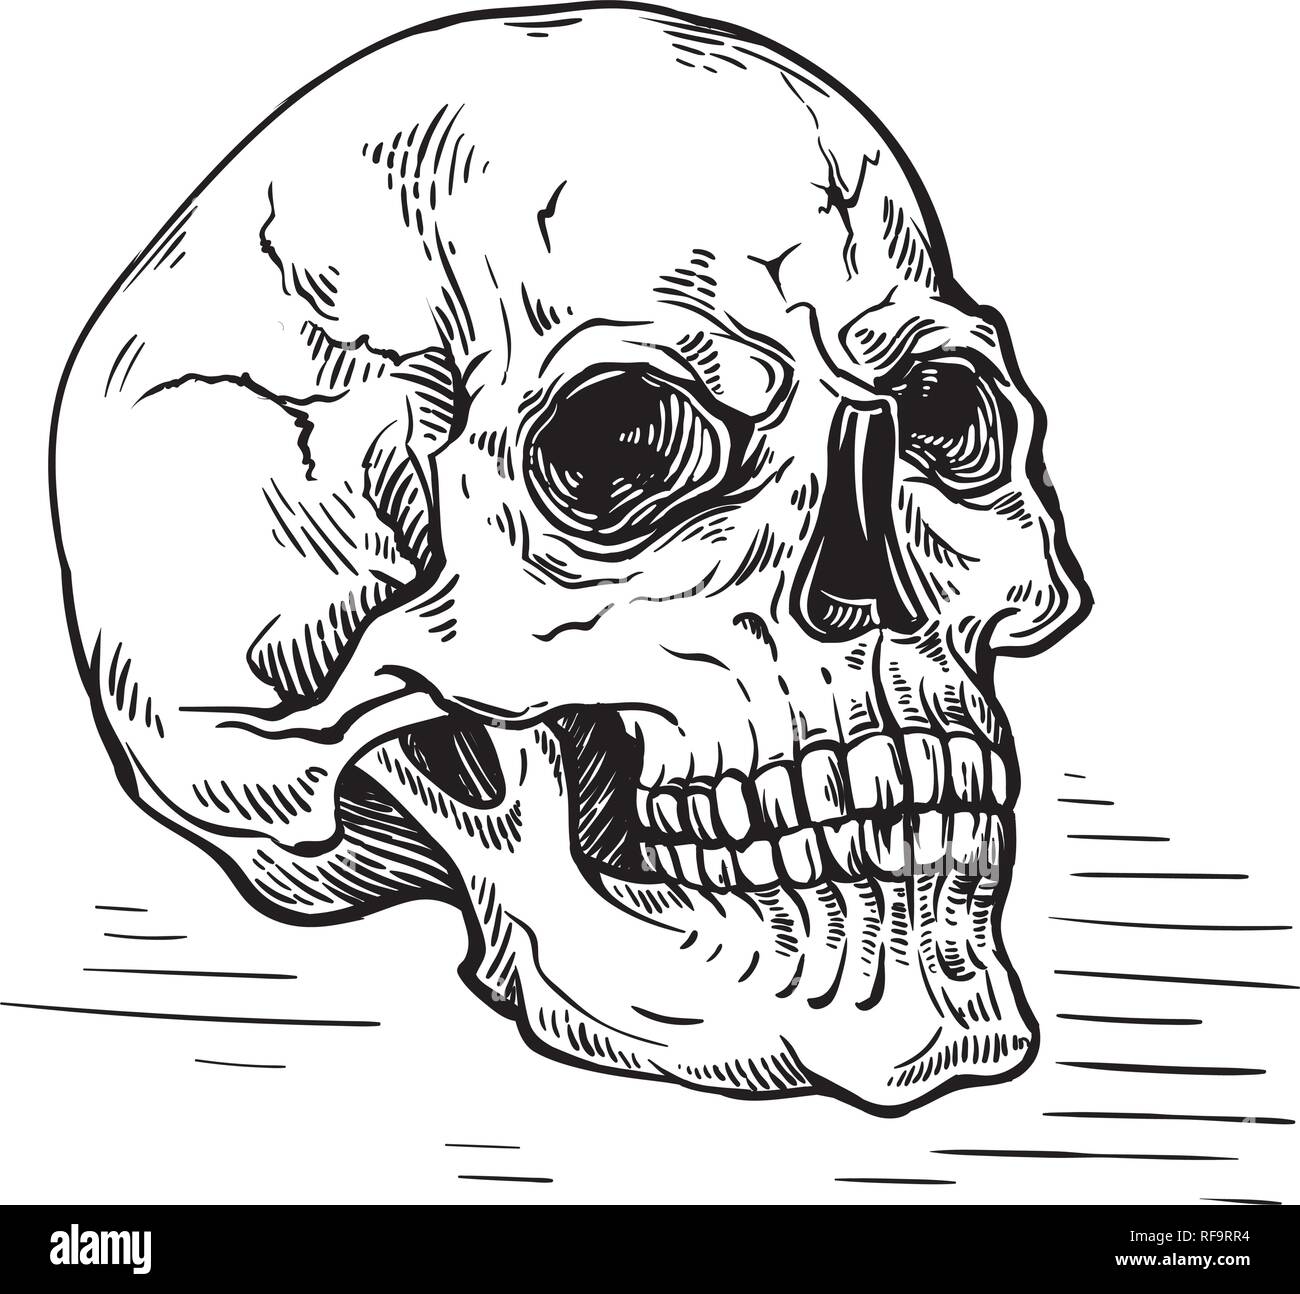 Croquis dessinés à la main, crâne anatomique vintage vector illustration Illustration de Vecteur